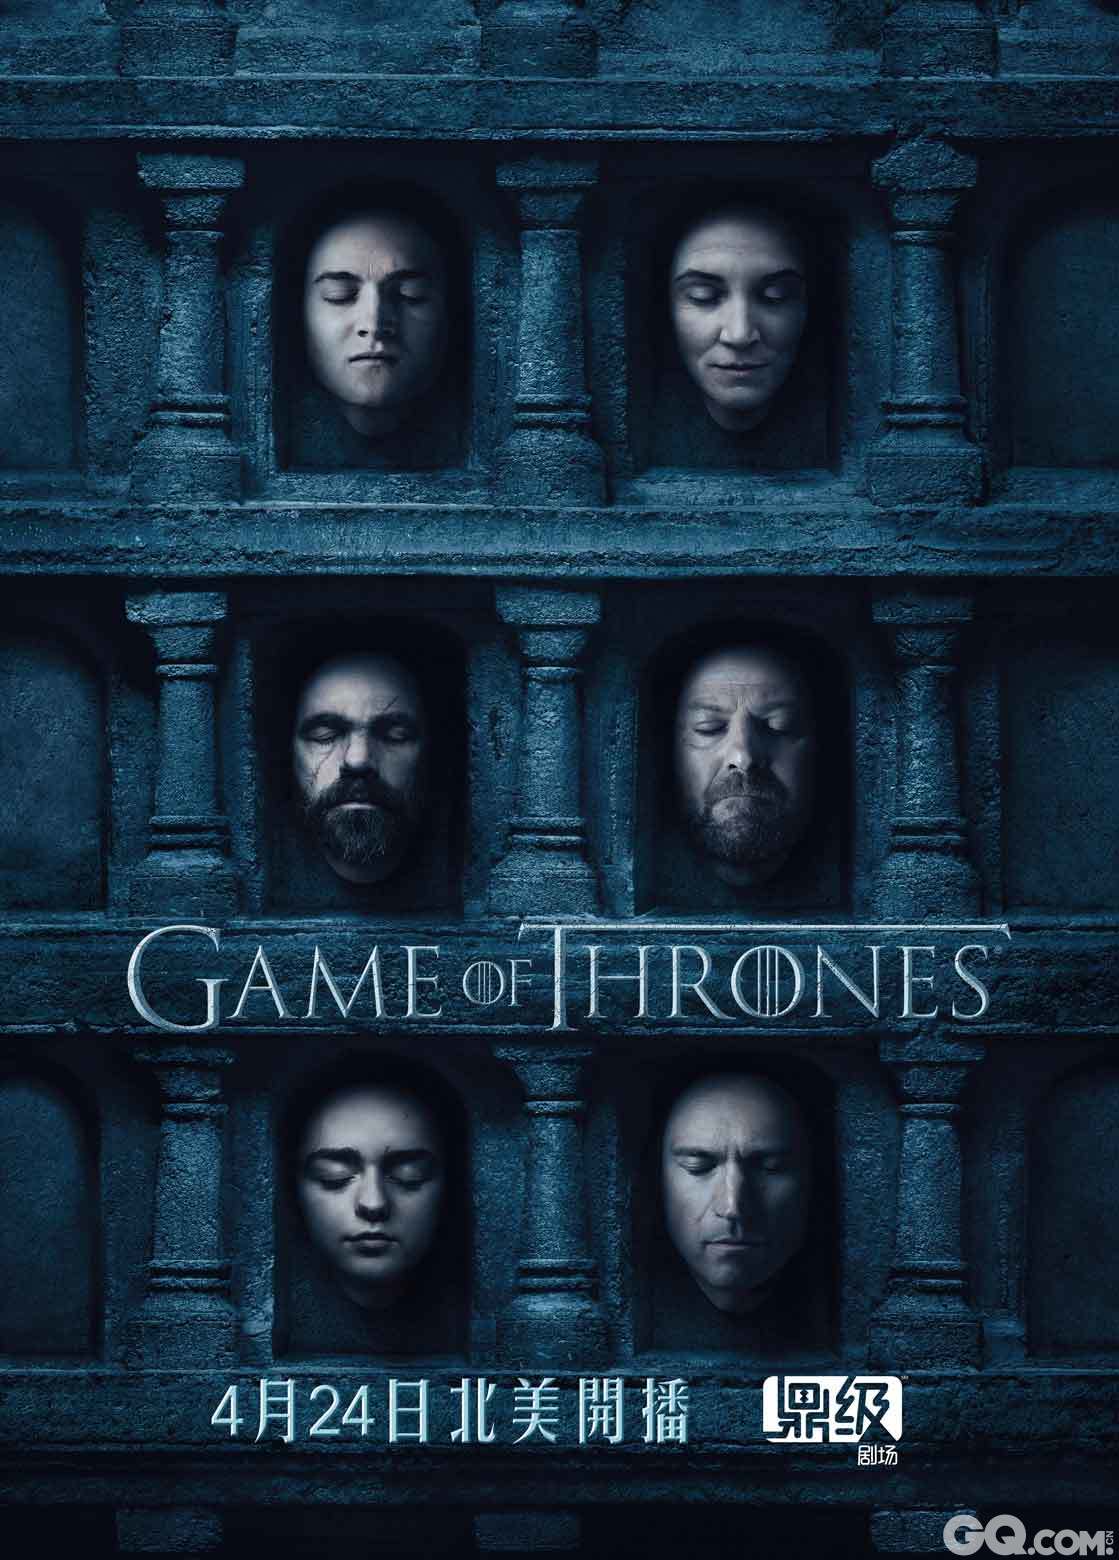 广受好评的HBO强档剧集《权力的游戏》（Game of Thrones）第一次在全球各个市场同步公开最新第六季的主视觉图与角色海报。在中国，《权力的游戏》第六季将通过鼎级剧场独家首映。